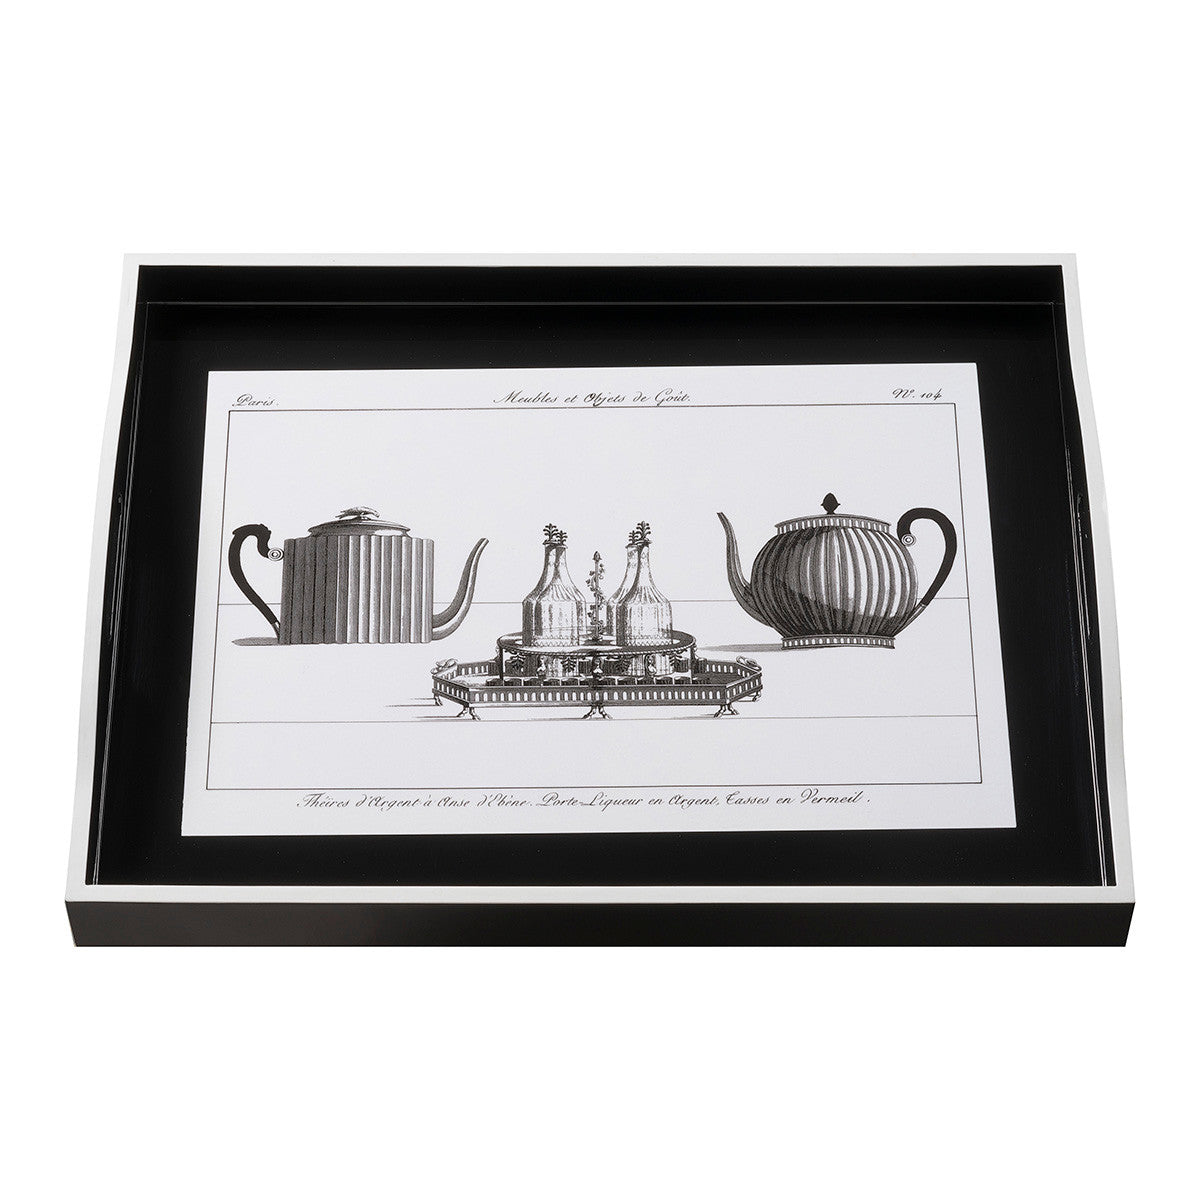 Whitelaw & Newton Teapot on Black Large Black Tray